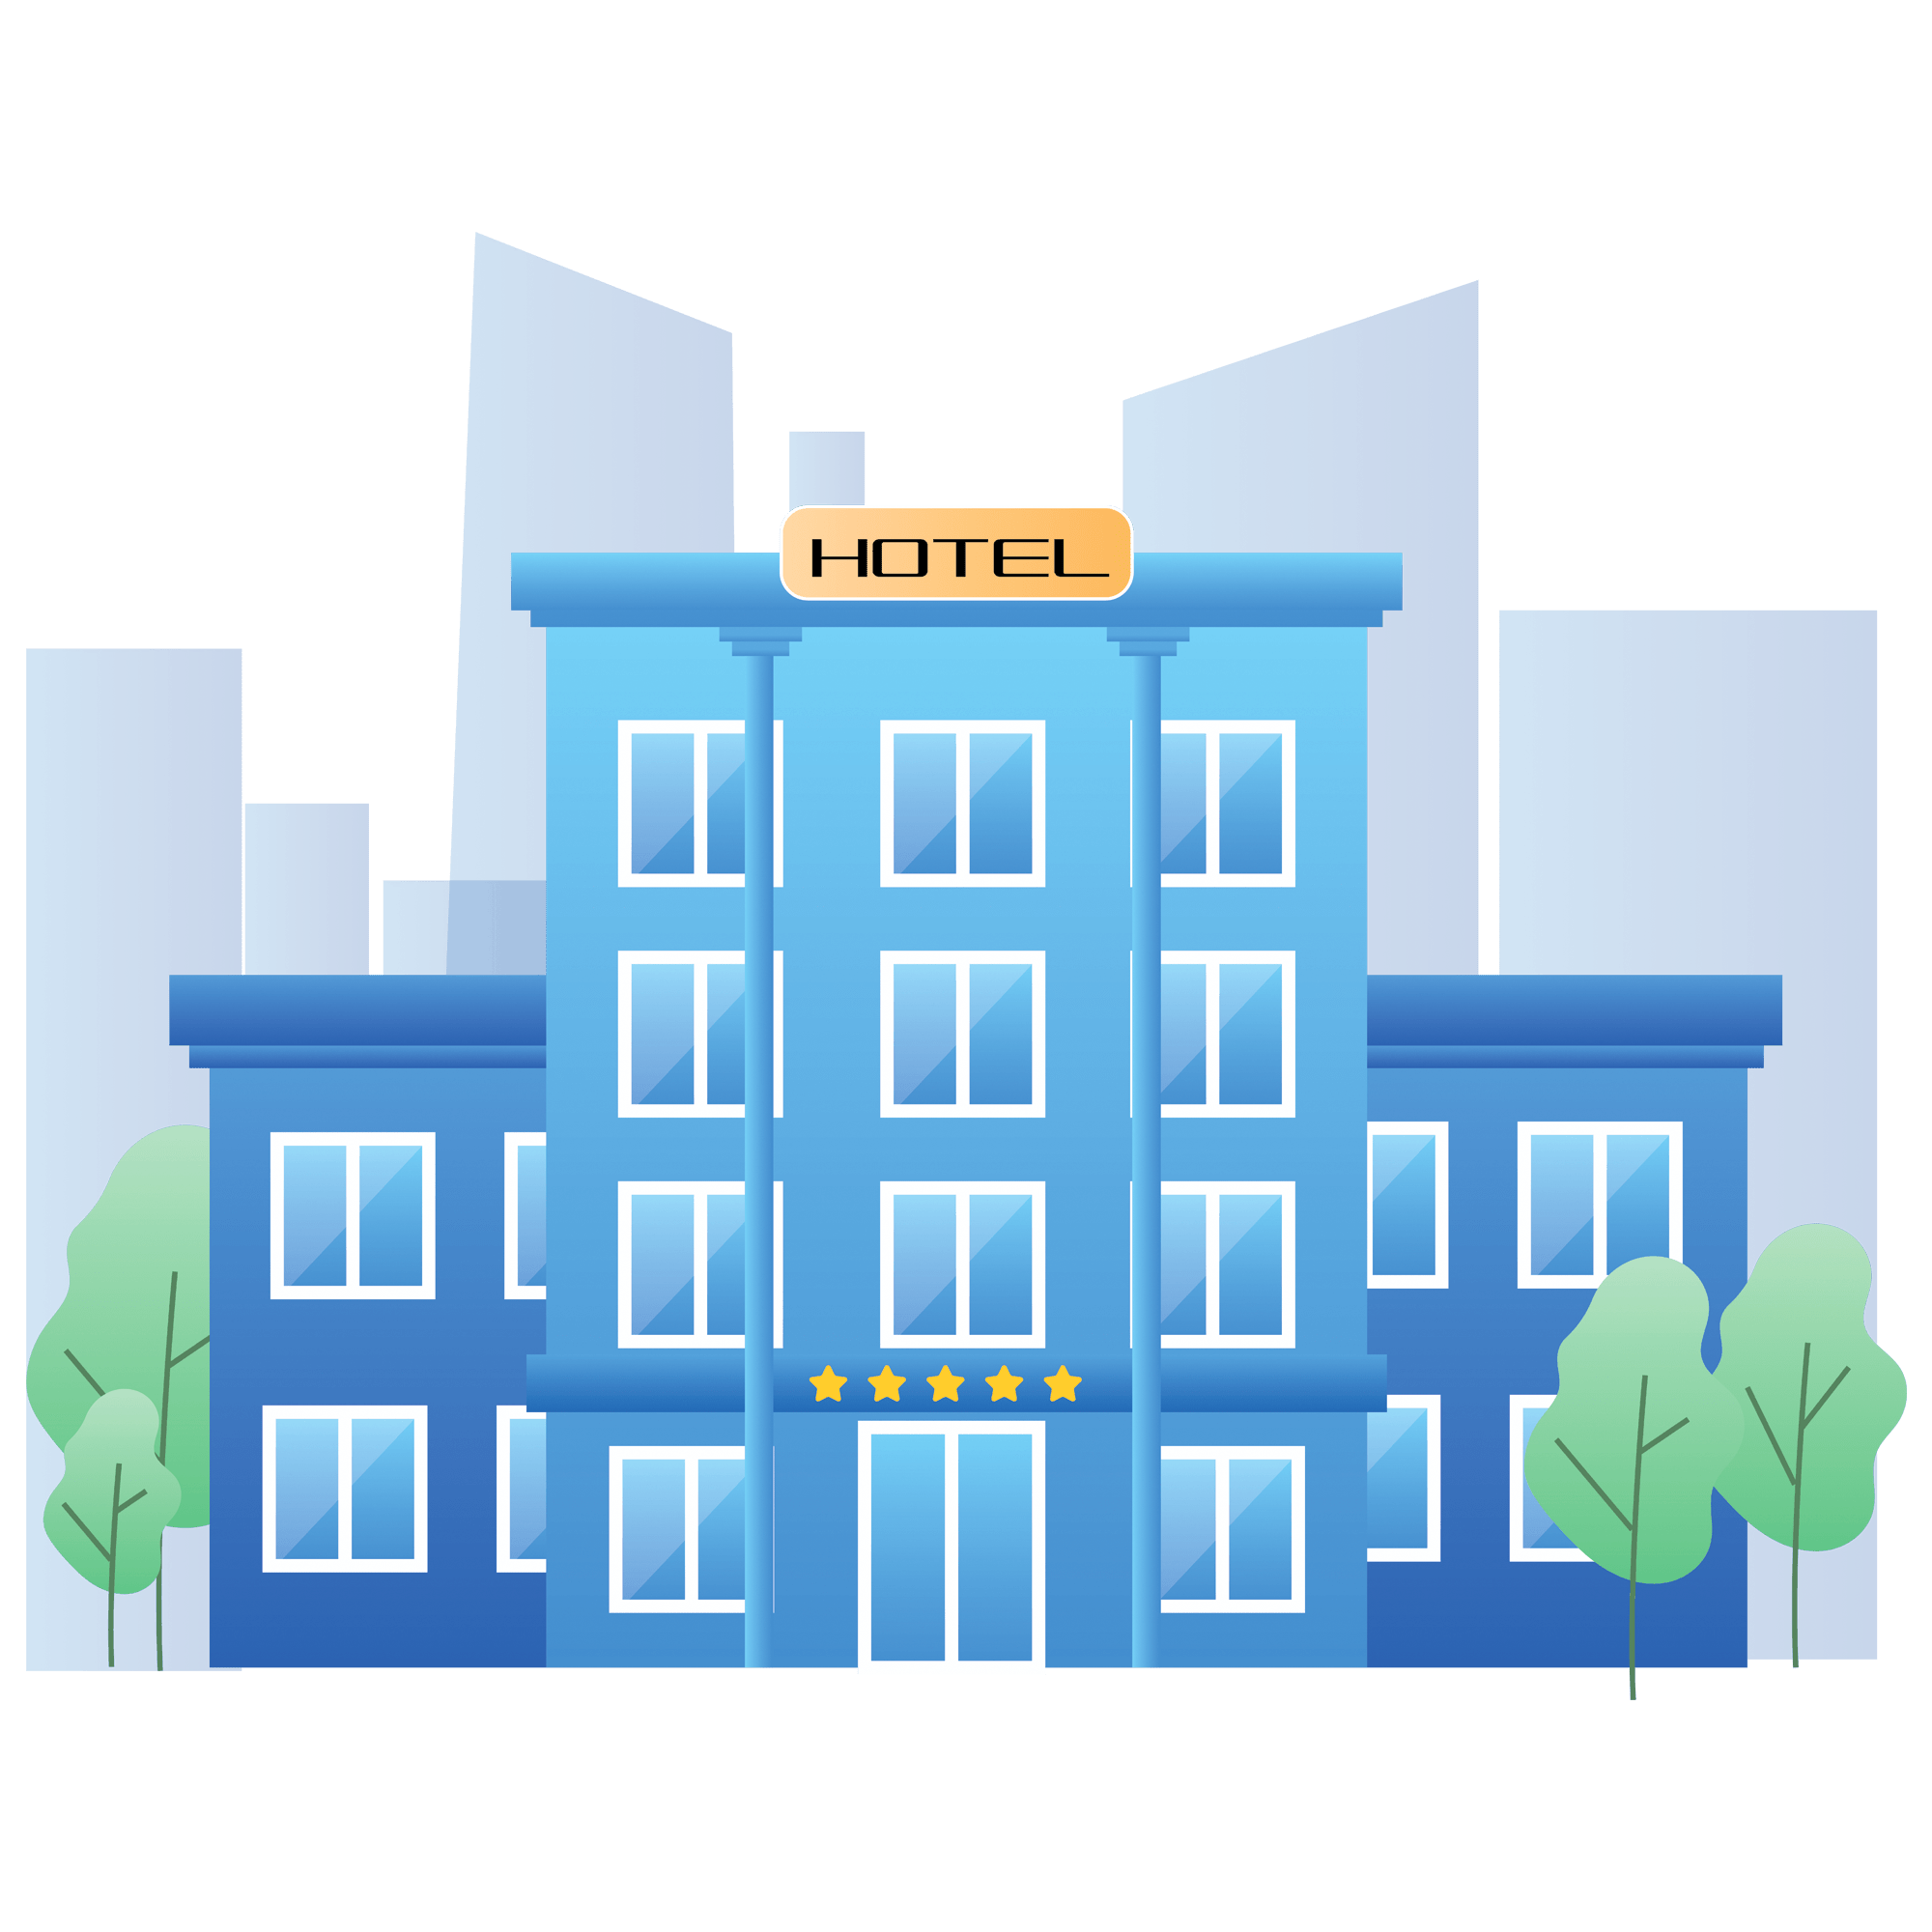 Hotel Mini Program Development